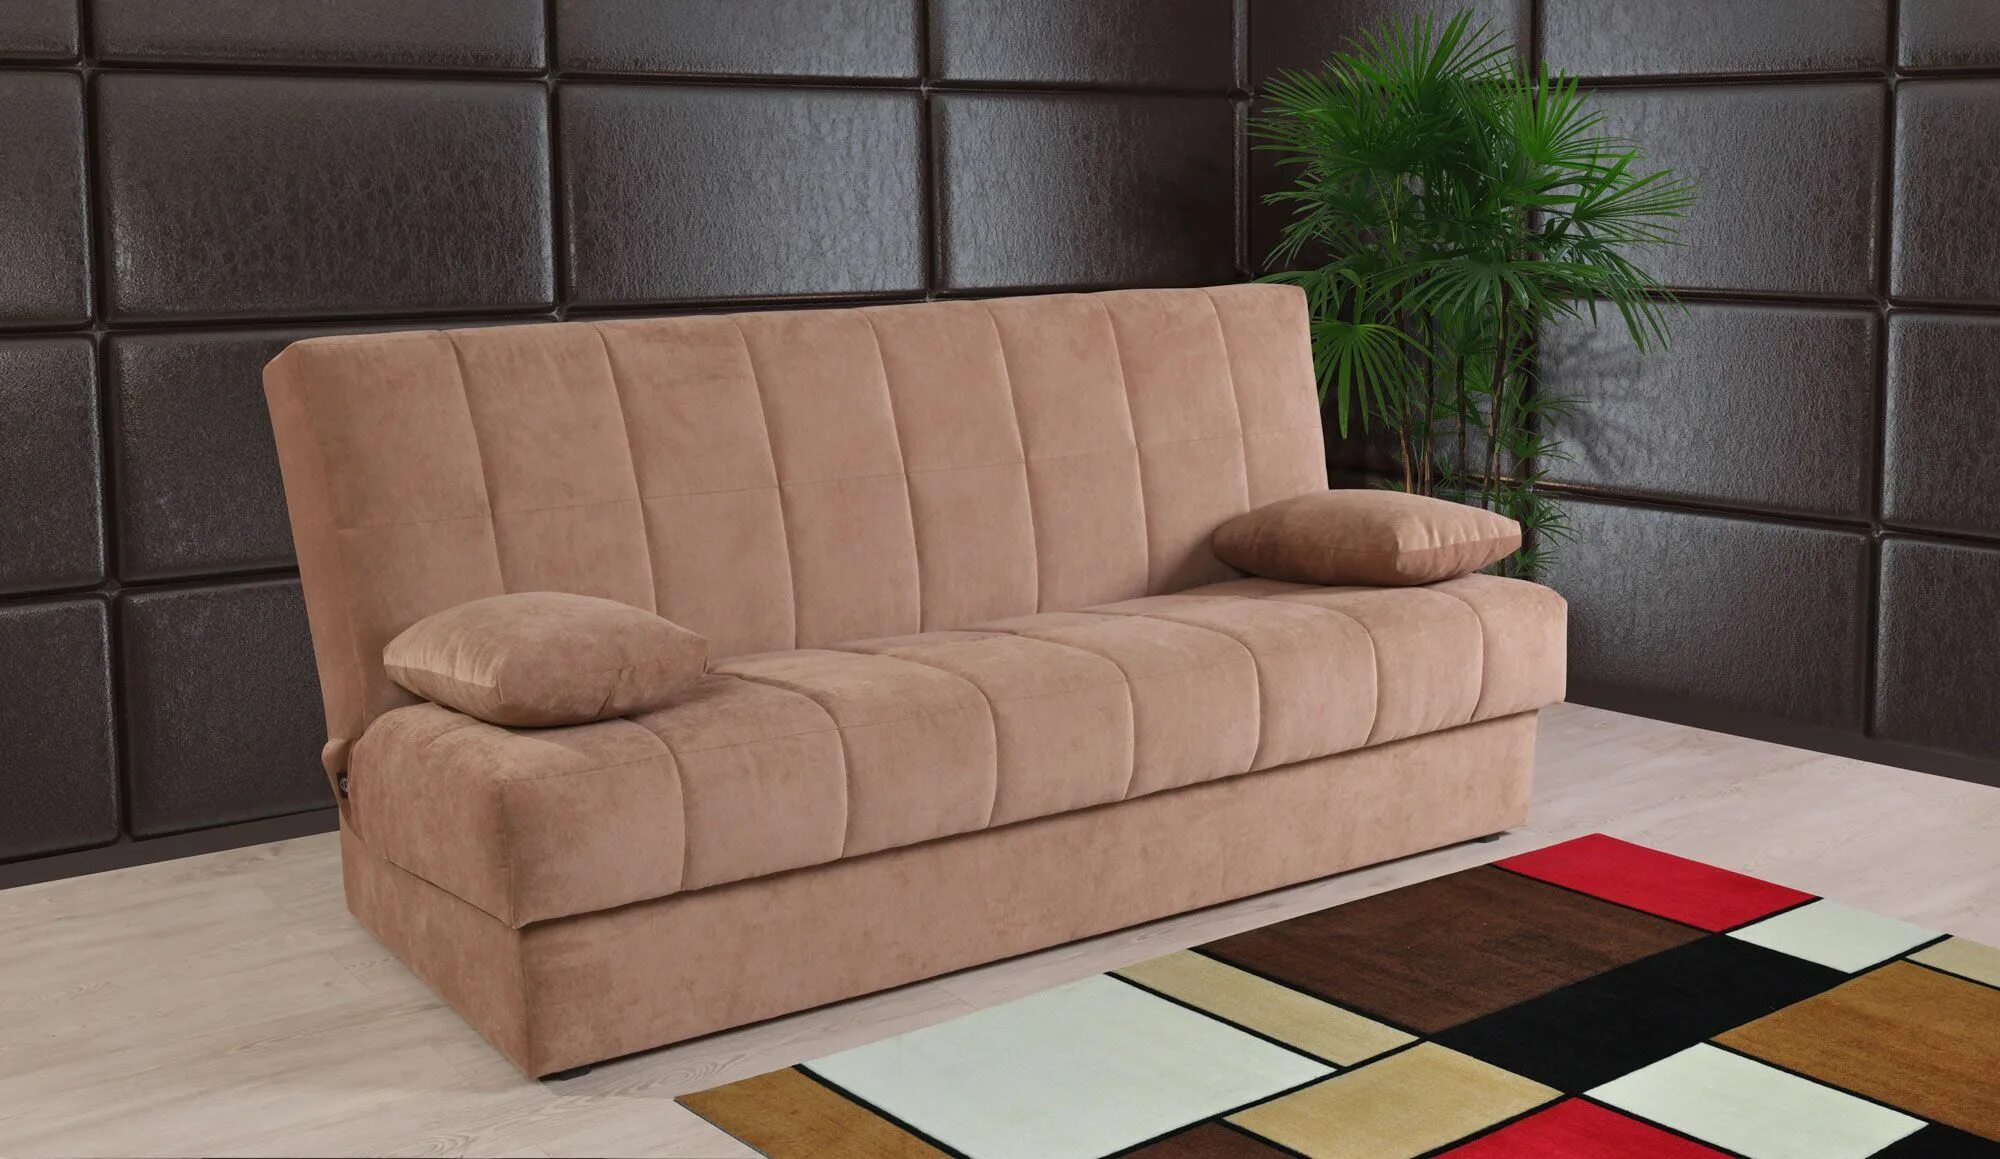 Купить диван от производителя мебель. Диван Сонет Ангстрем. Диван книжка Аскона. Диваны красивые и удобные. Недорогие диваны.